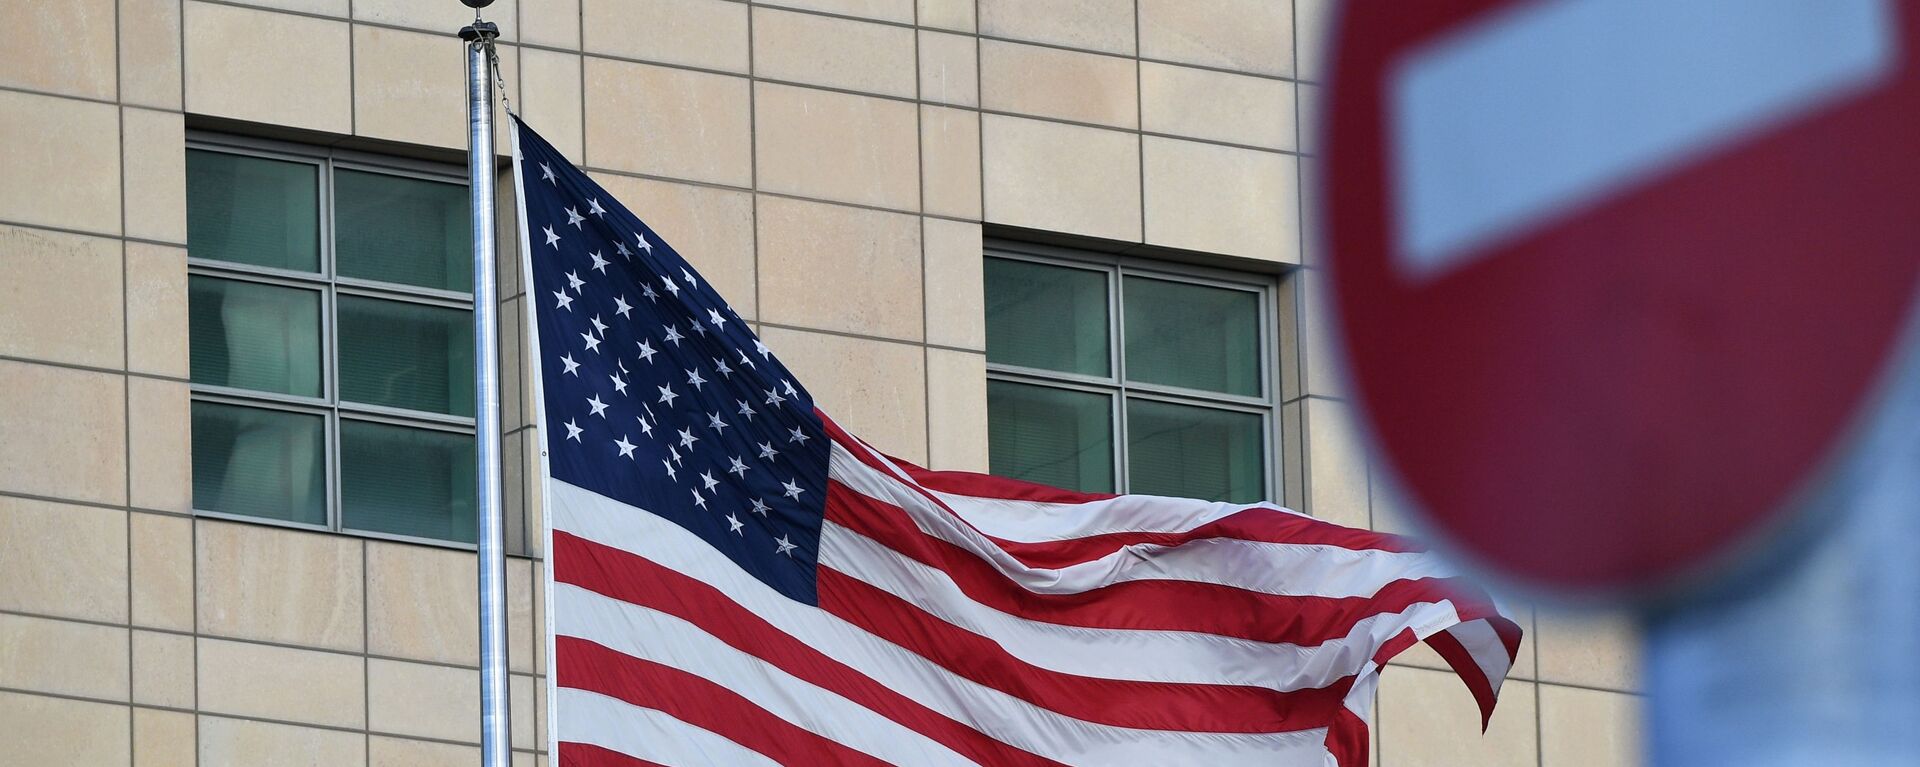 Государственный флаг США у американского посольства в Москве - Sputnik Латвия, 1920, 01.05.2021